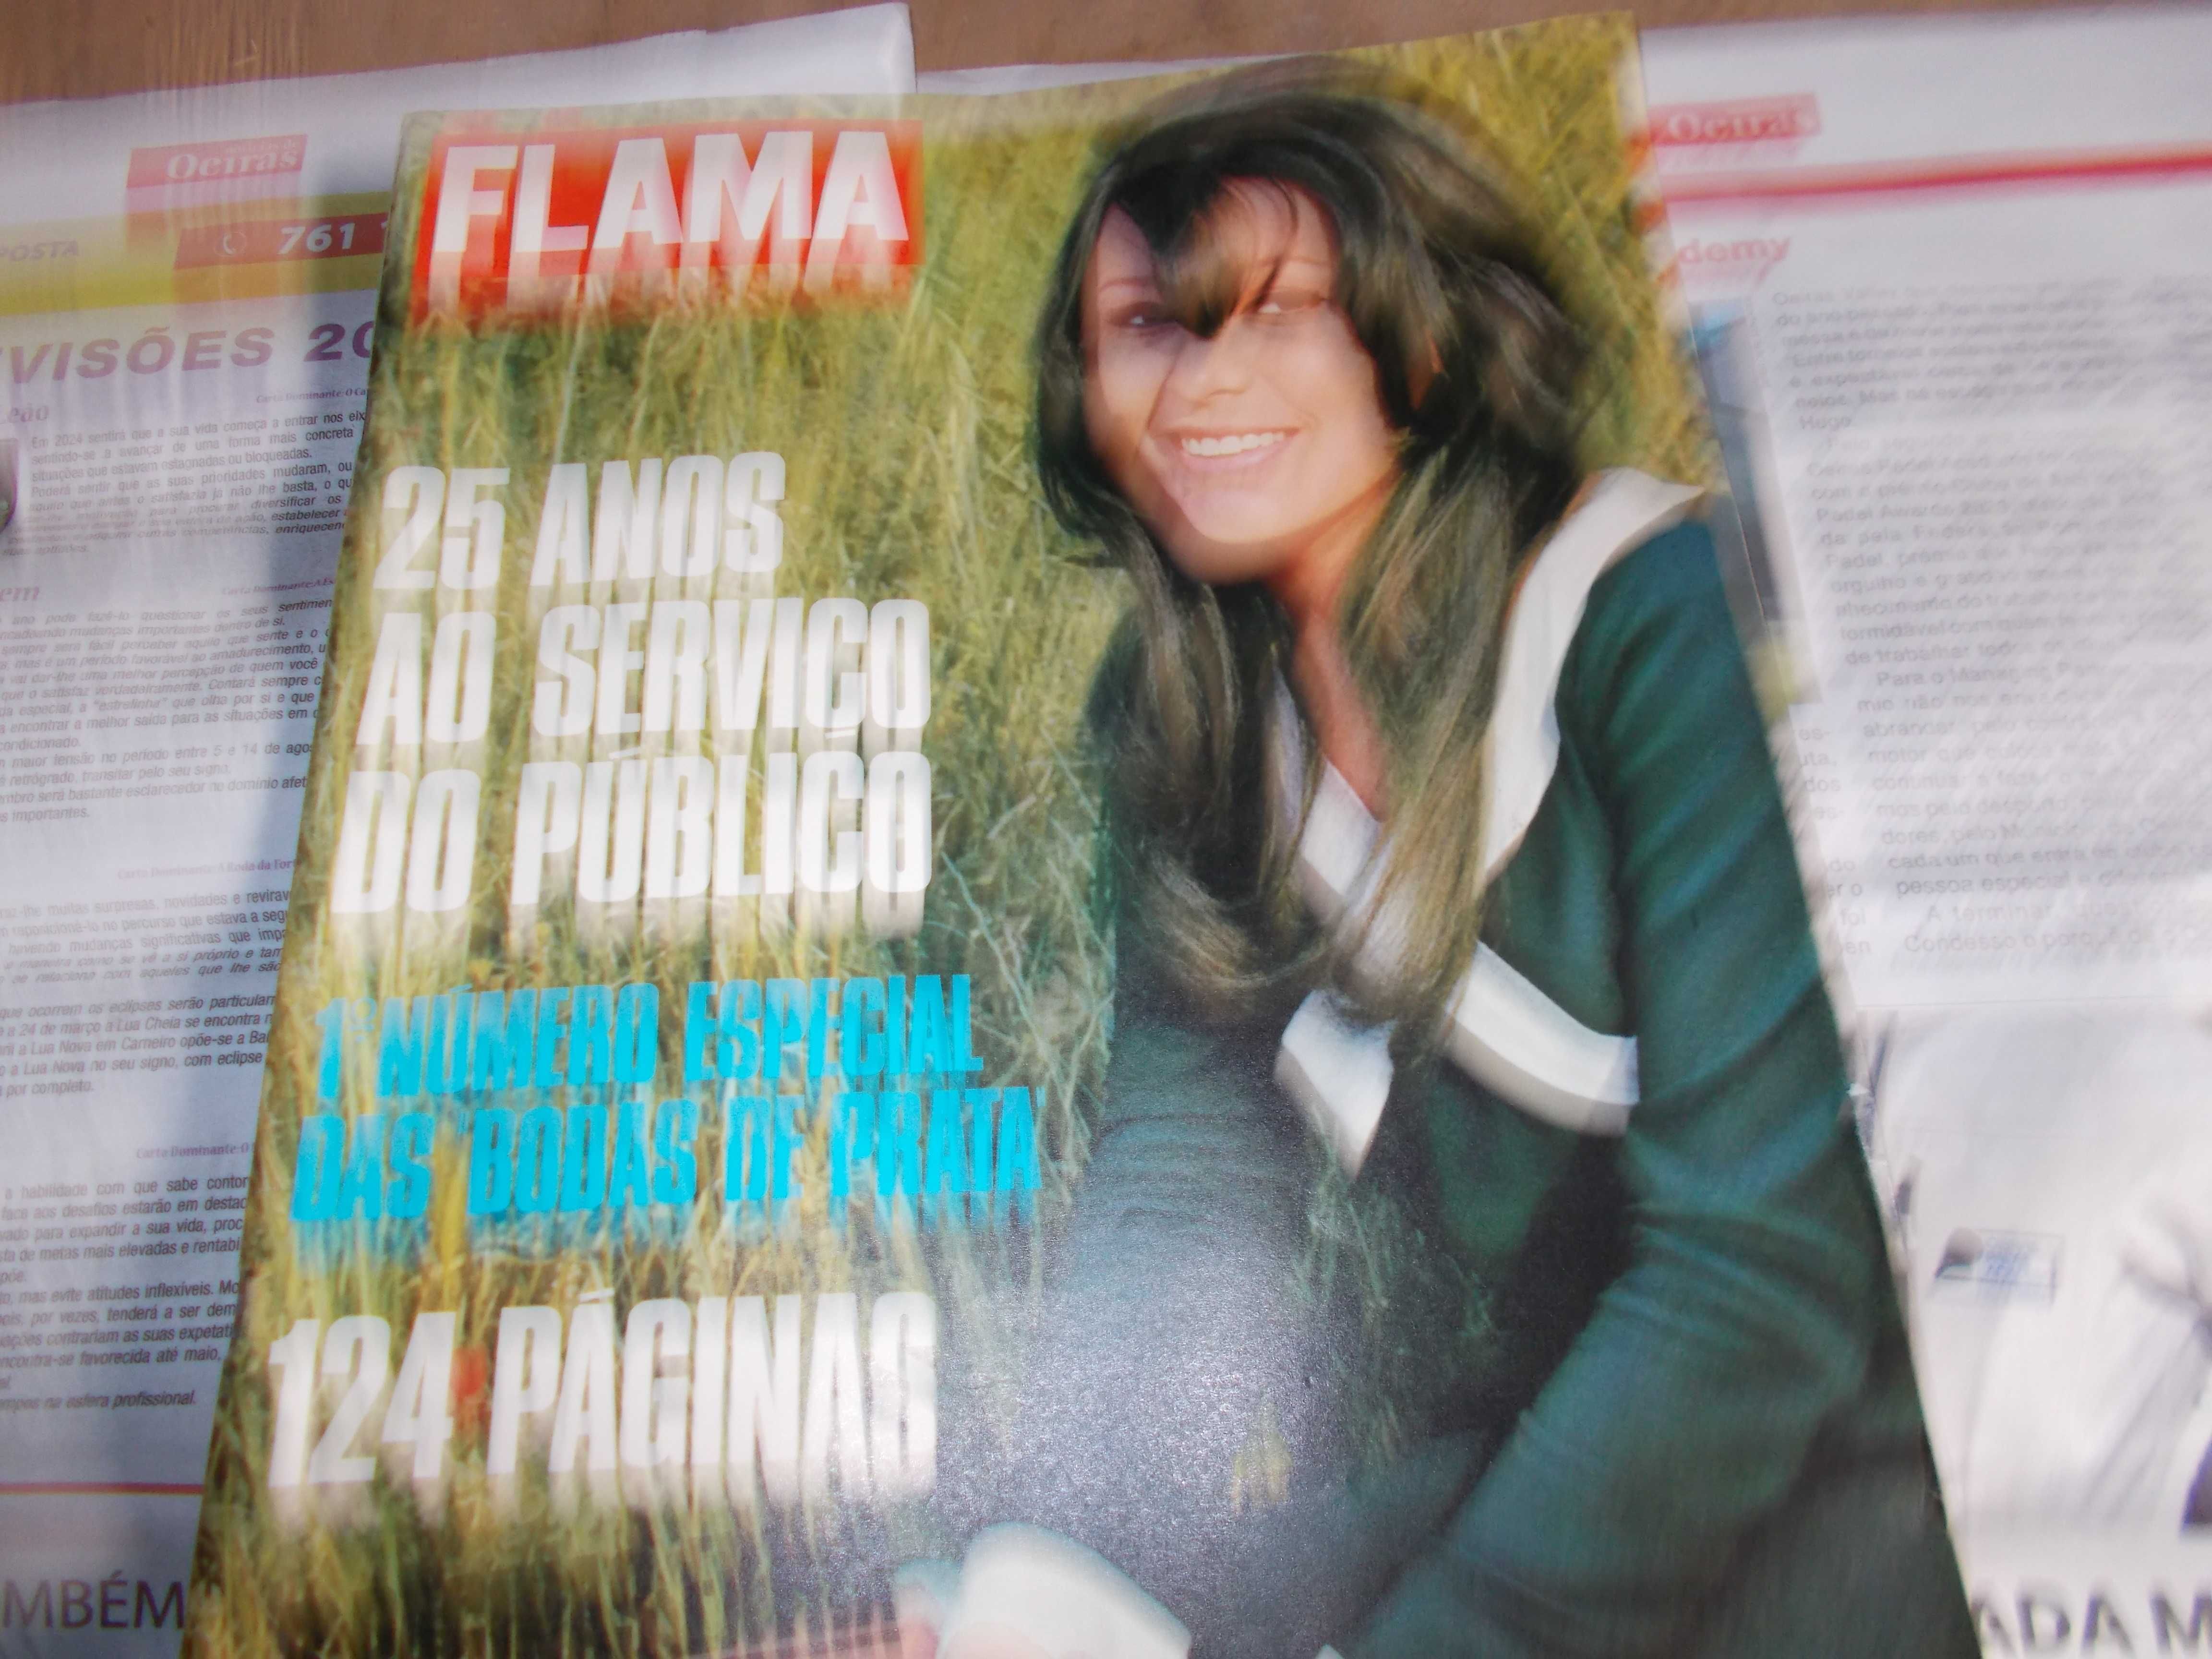 Flama 25 anos. 1968 .Revista rara.